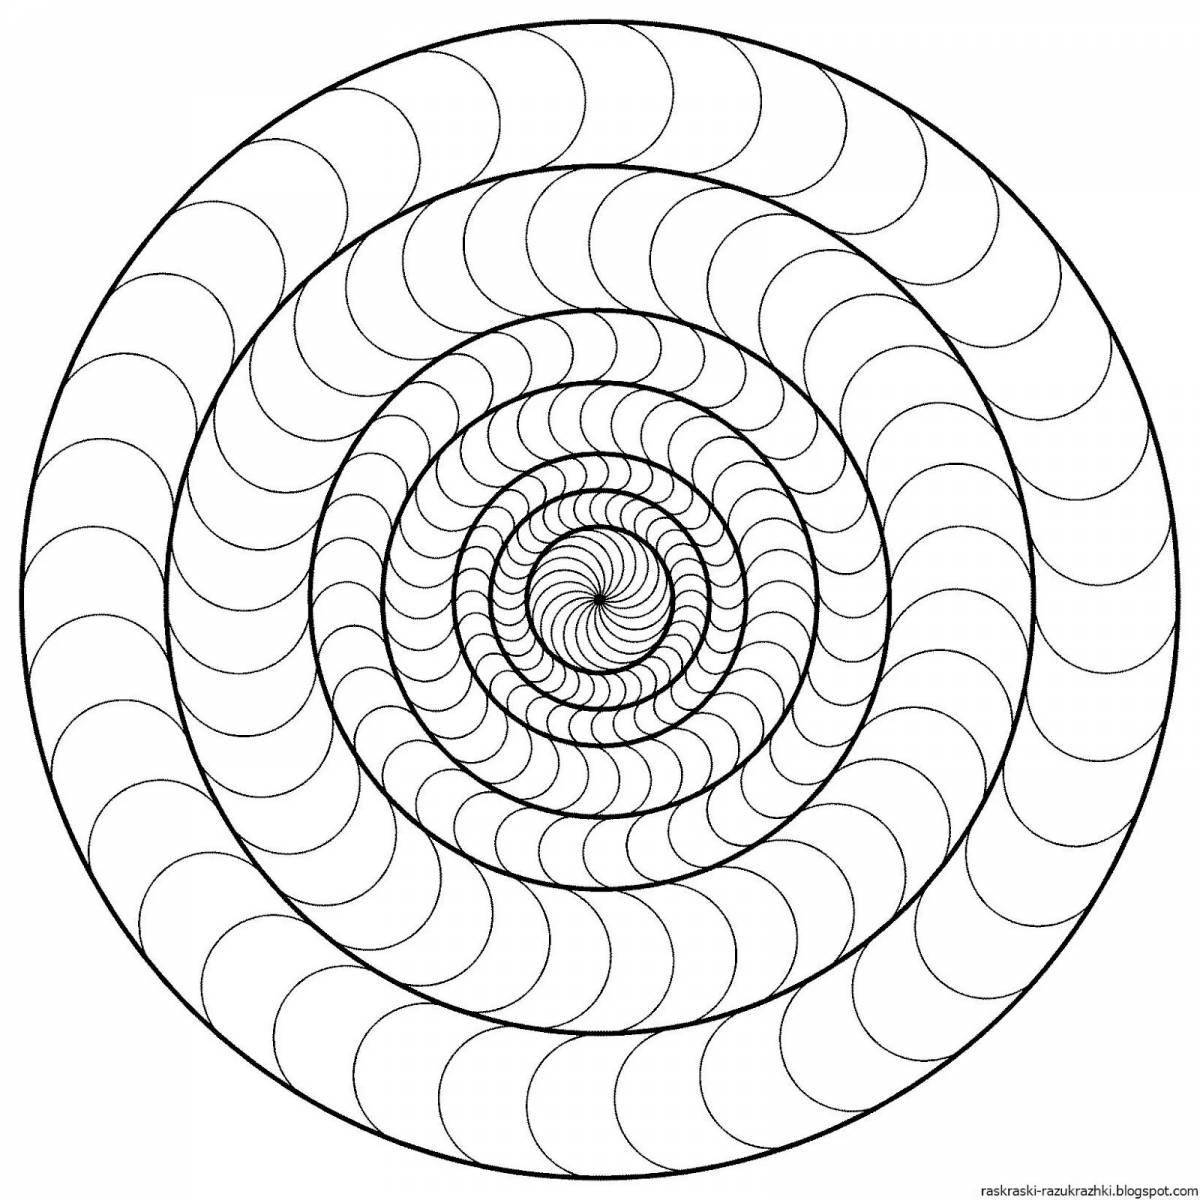 Fun detailed spiral coloring